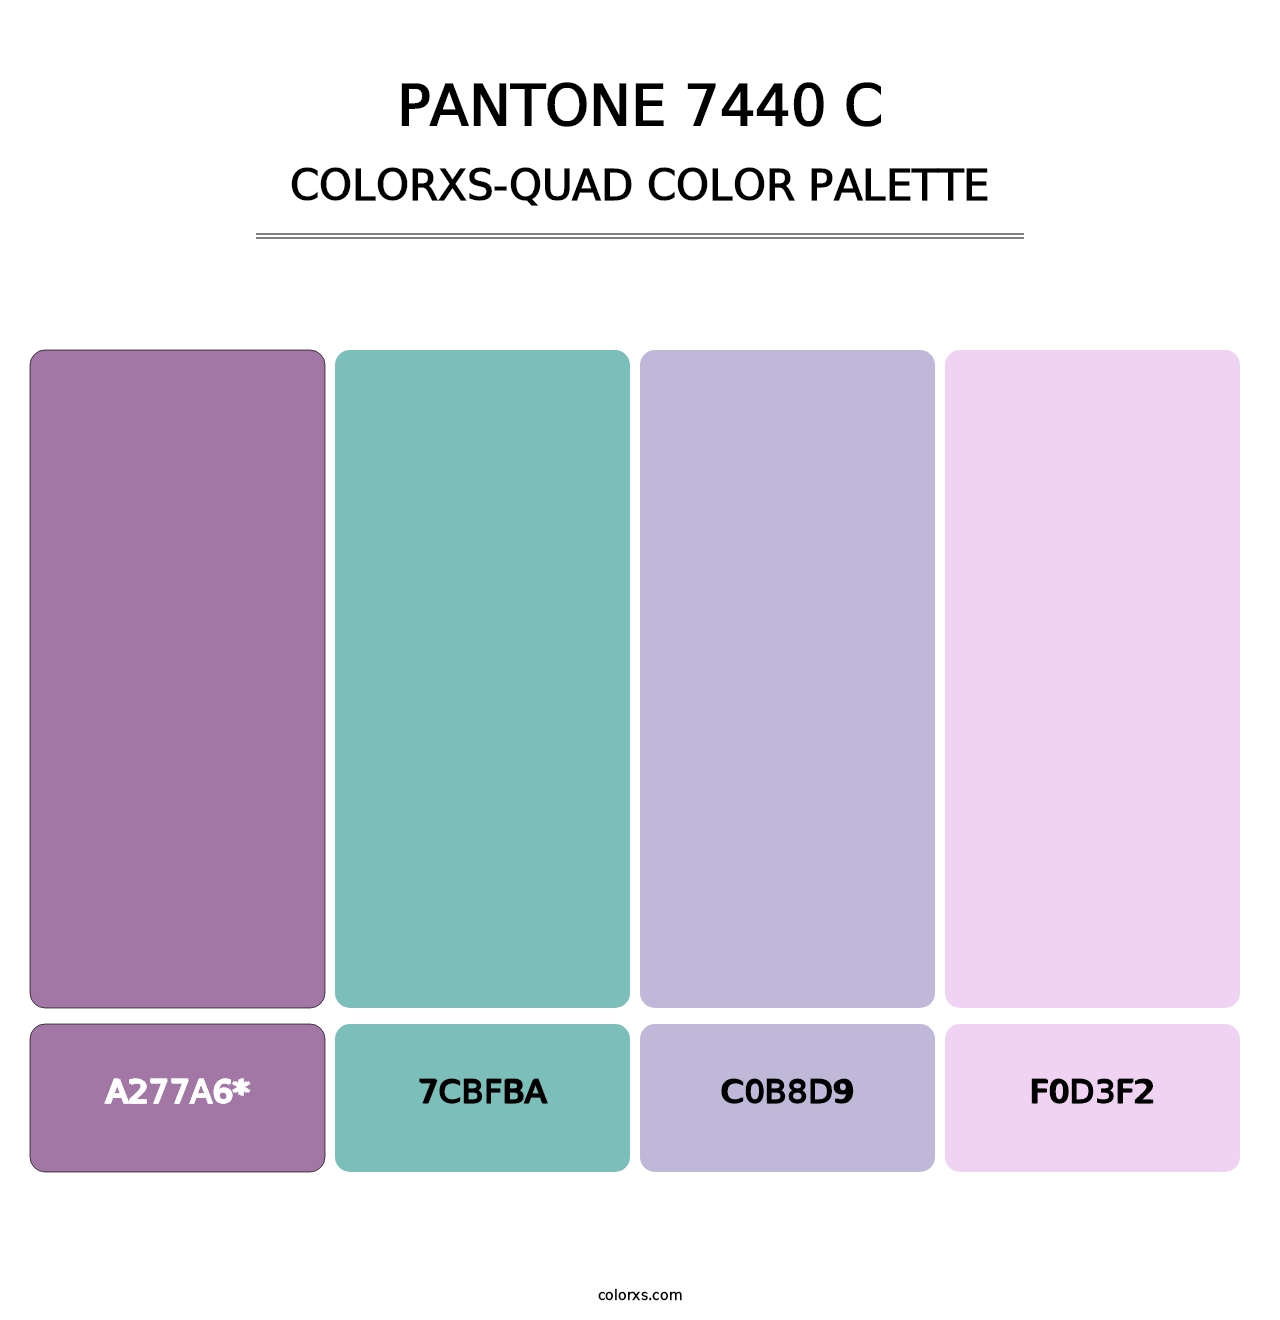 PANTONE 7440 C - Colorxs Quad Palette